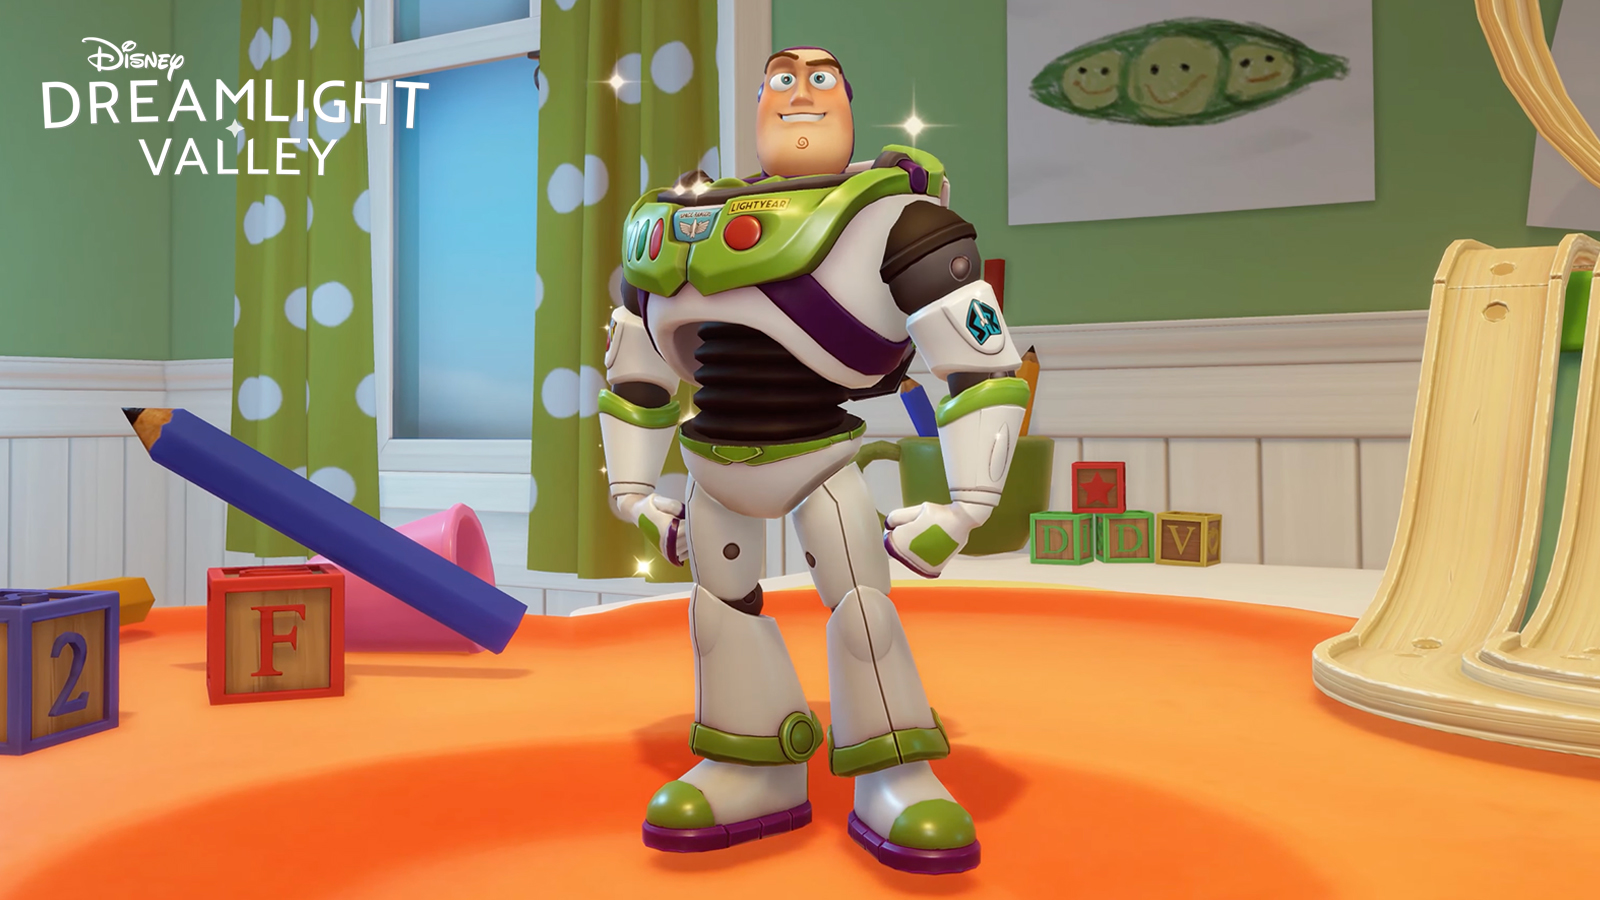 Buzz Lightyear là một trong những nhân vật trong Thung lũng Dreamlight của Disney